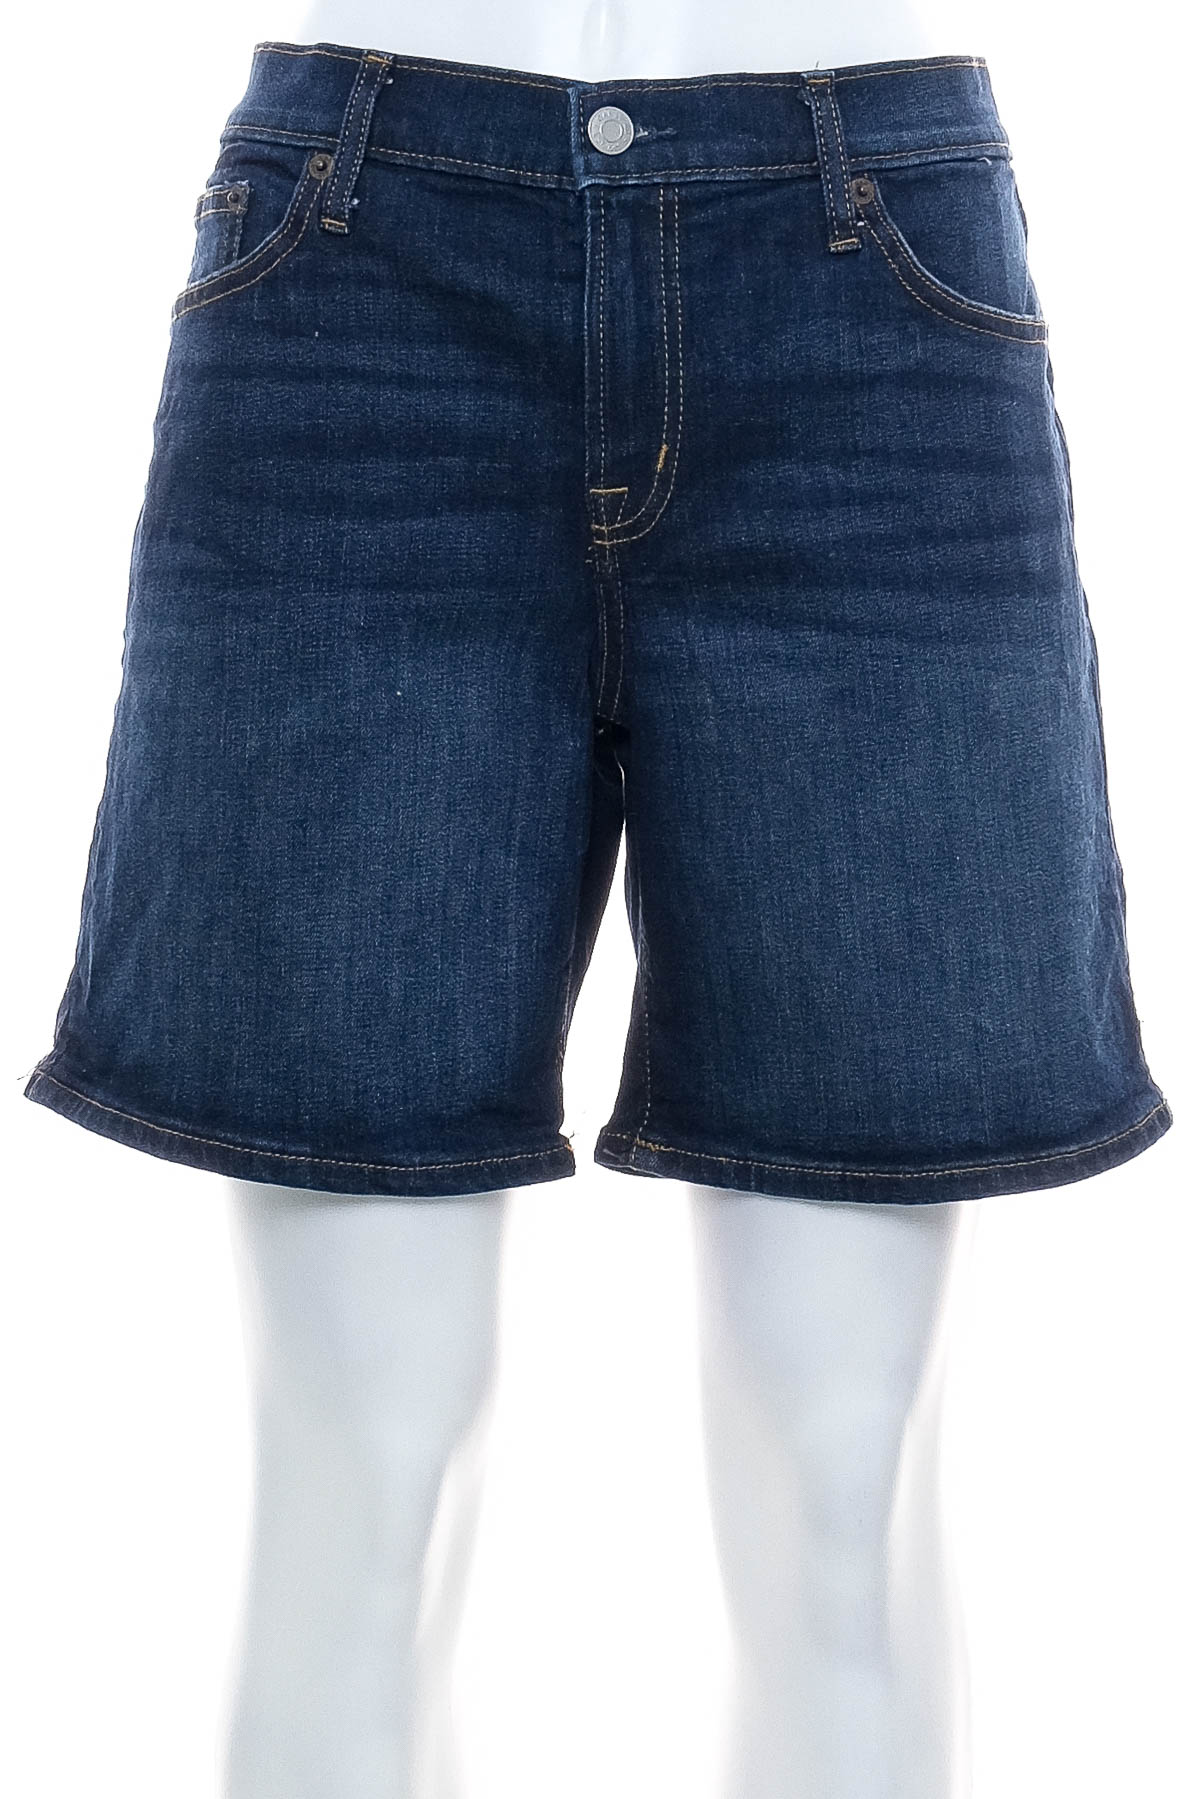 Female shorts - GAP - 0